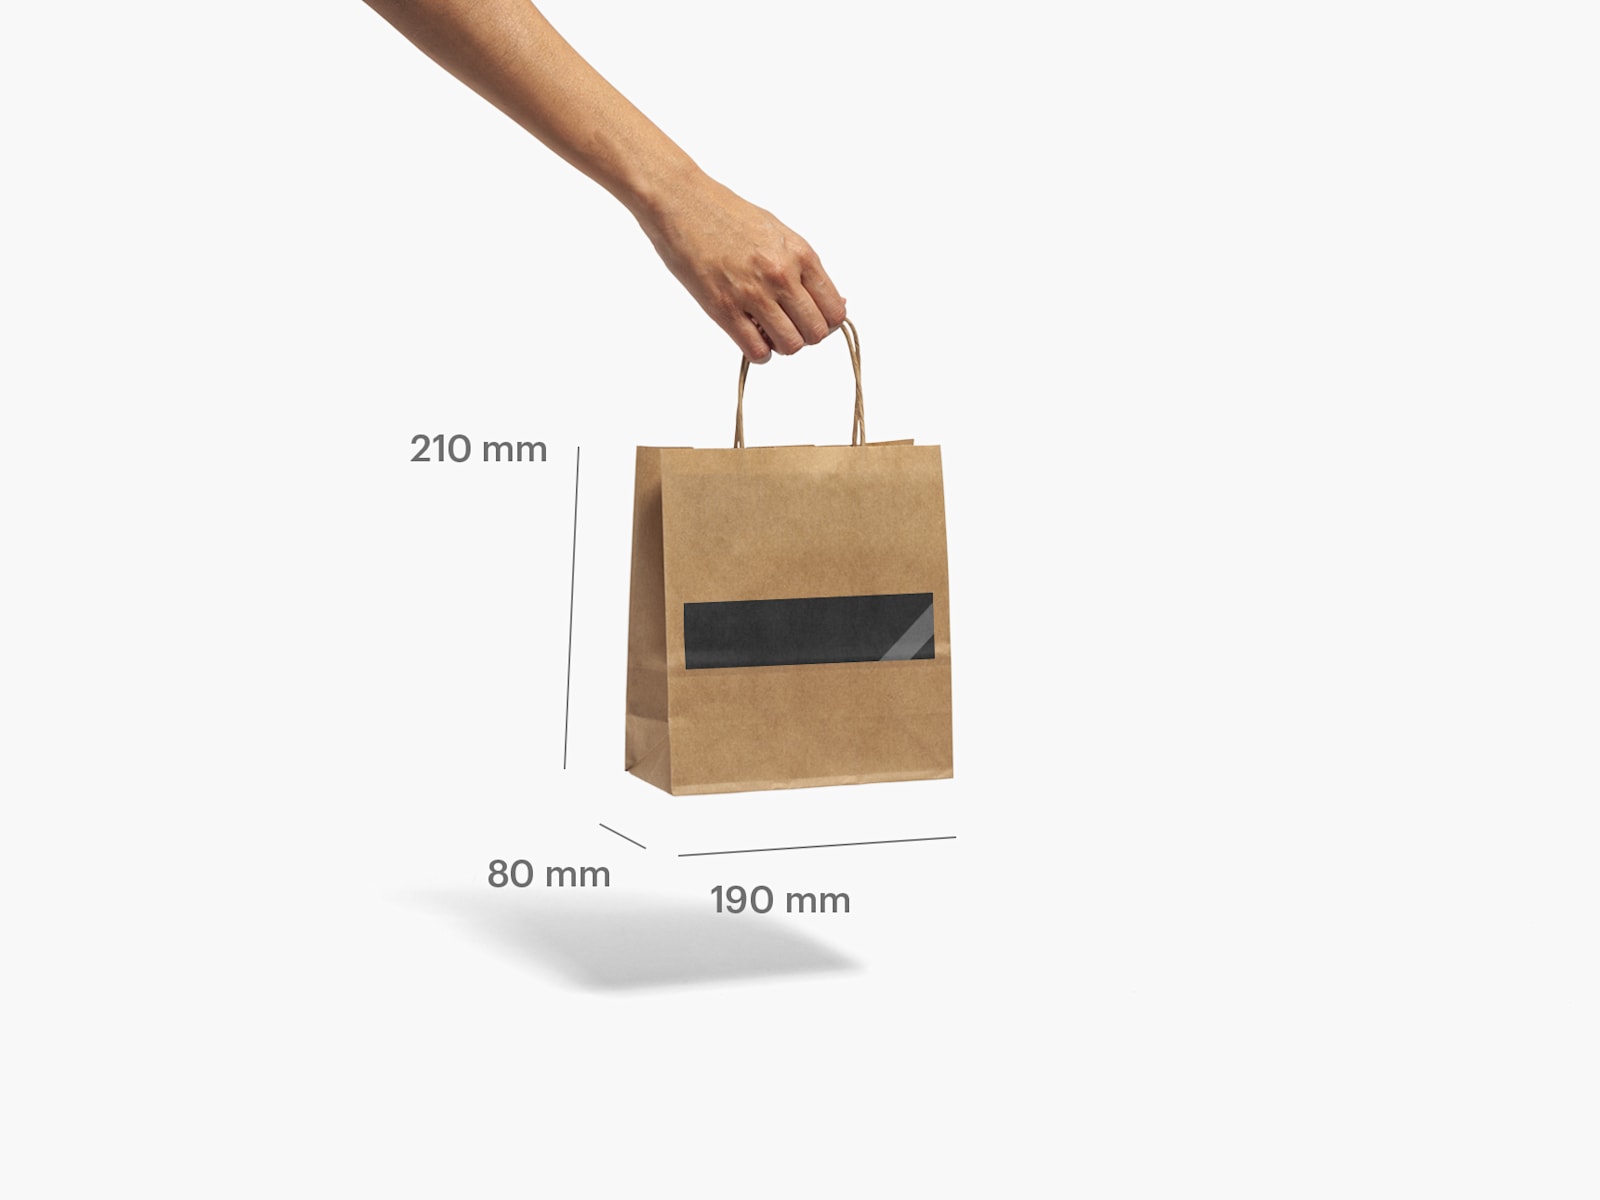 sacchetti di carta kraft avana anche per alimenti - shopper